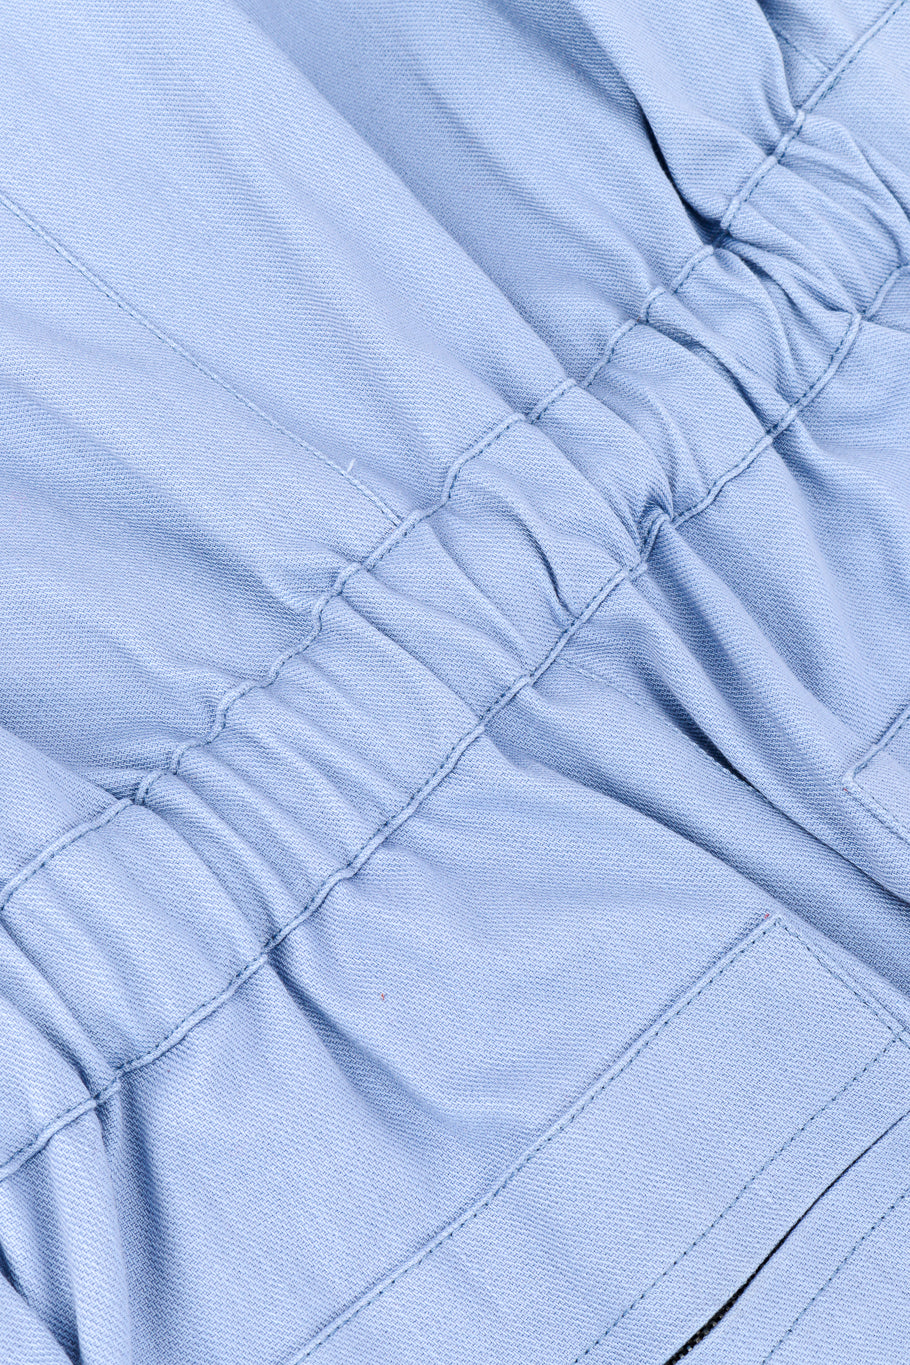 Miu Miu 2018 Resort Patch Coveralls elastic waist closeup @recess la